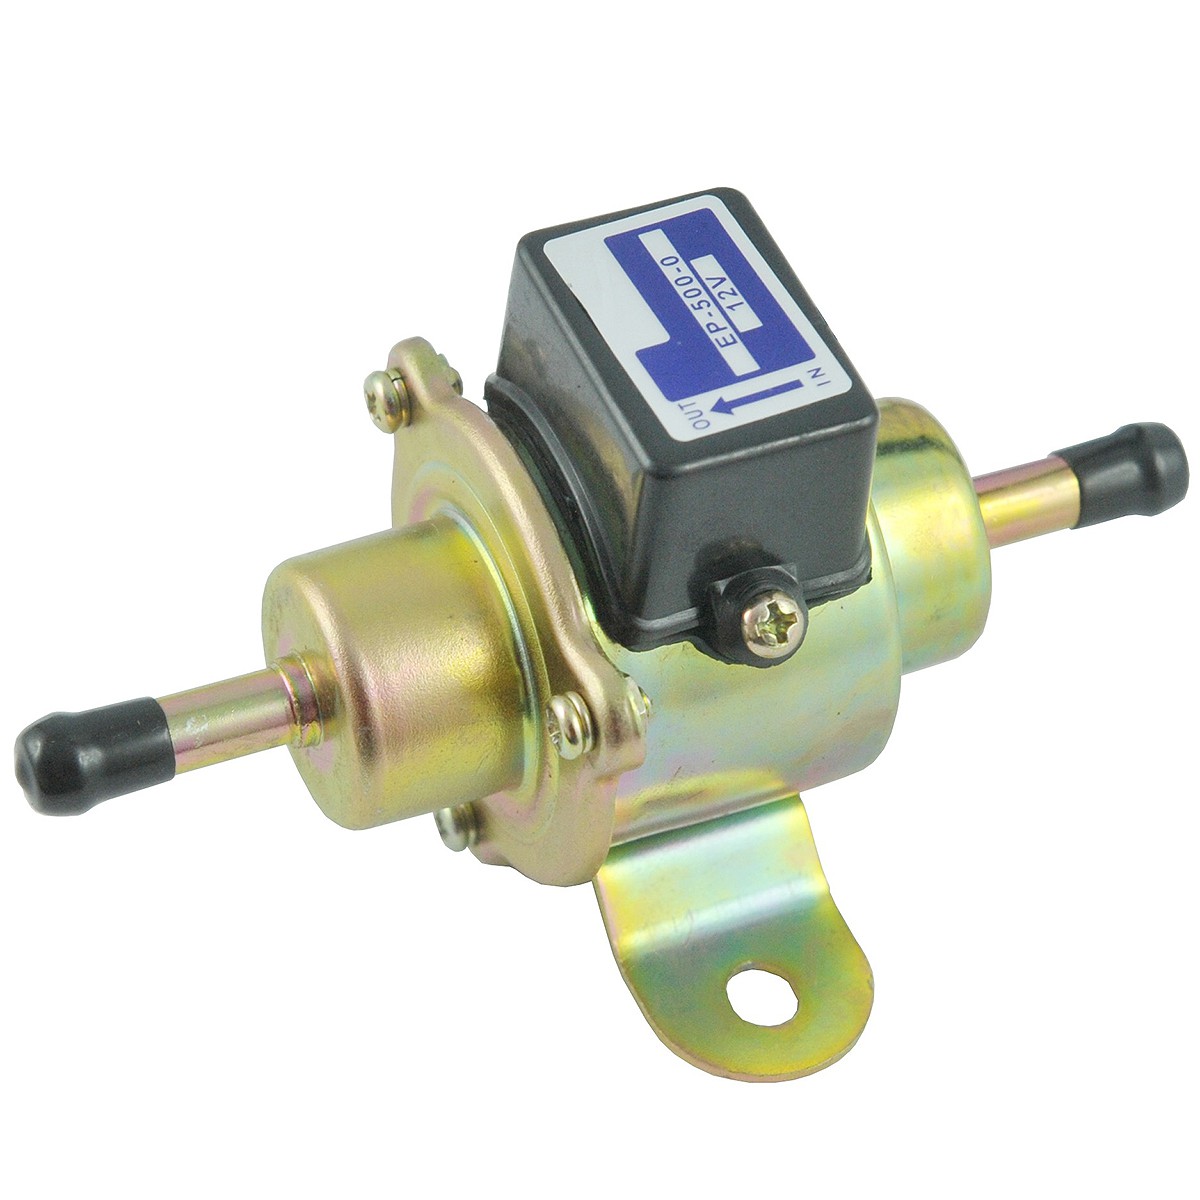 Fuel pump EP-500 / 12V / 8118-13-350 / 035000-0460